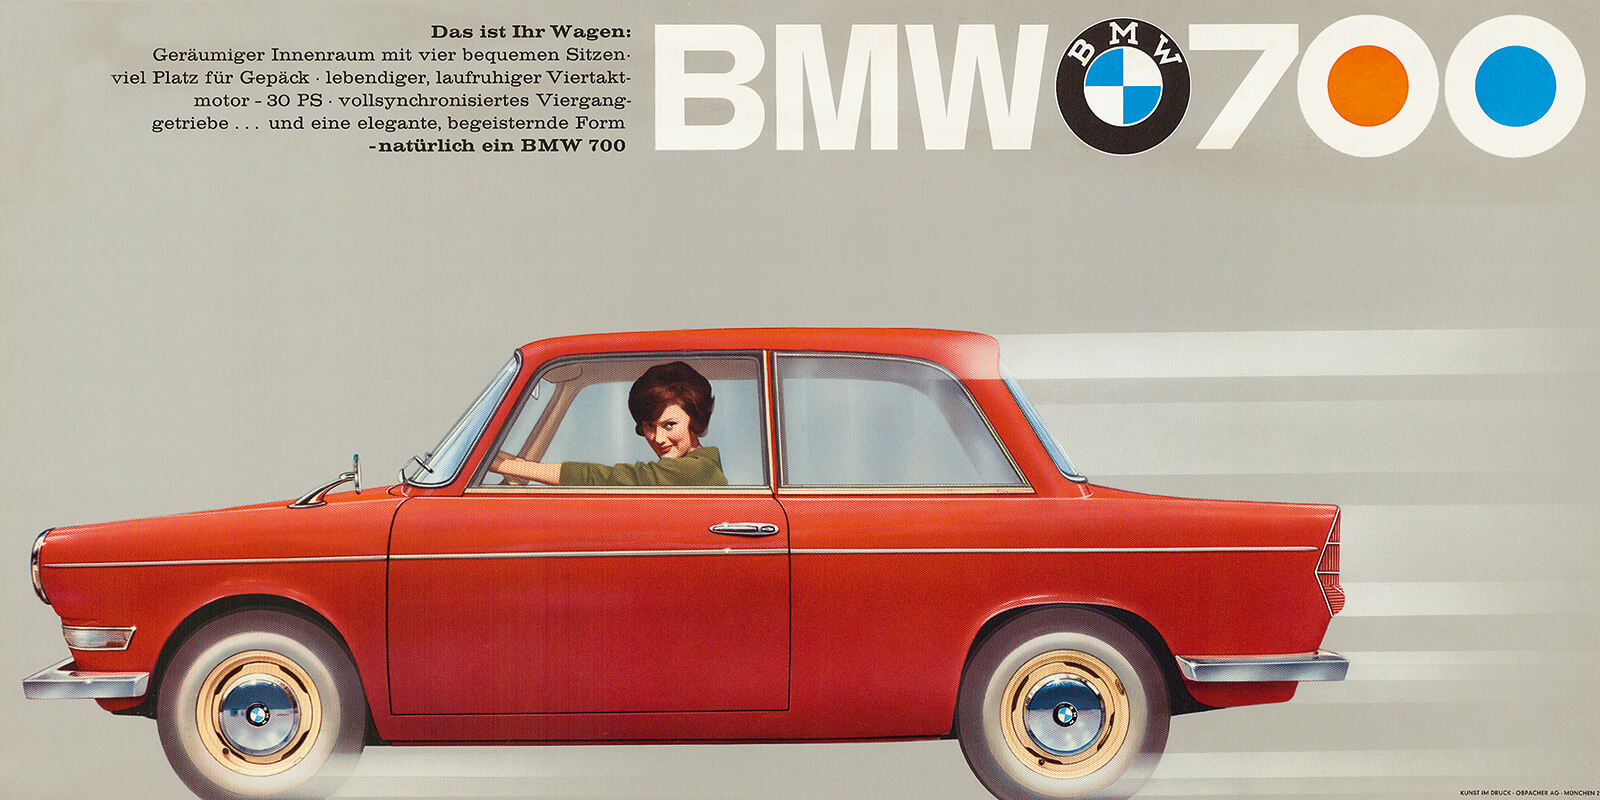 Pozabljen Bavarec, ki si zasluži več ljubezni – BMW 700